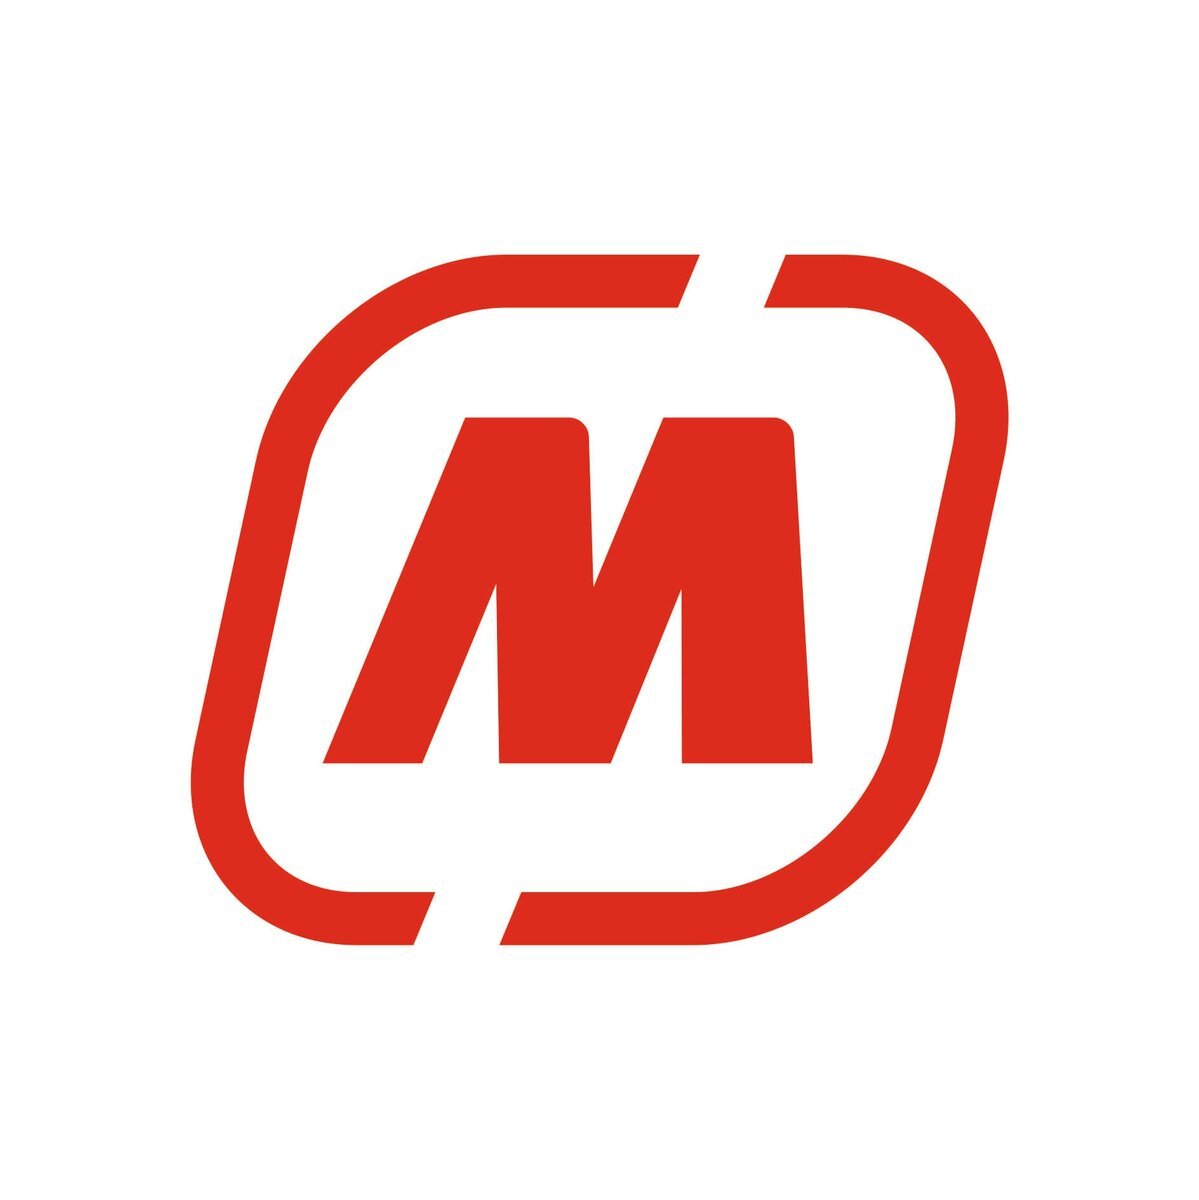 Фото логотип магазина магнит